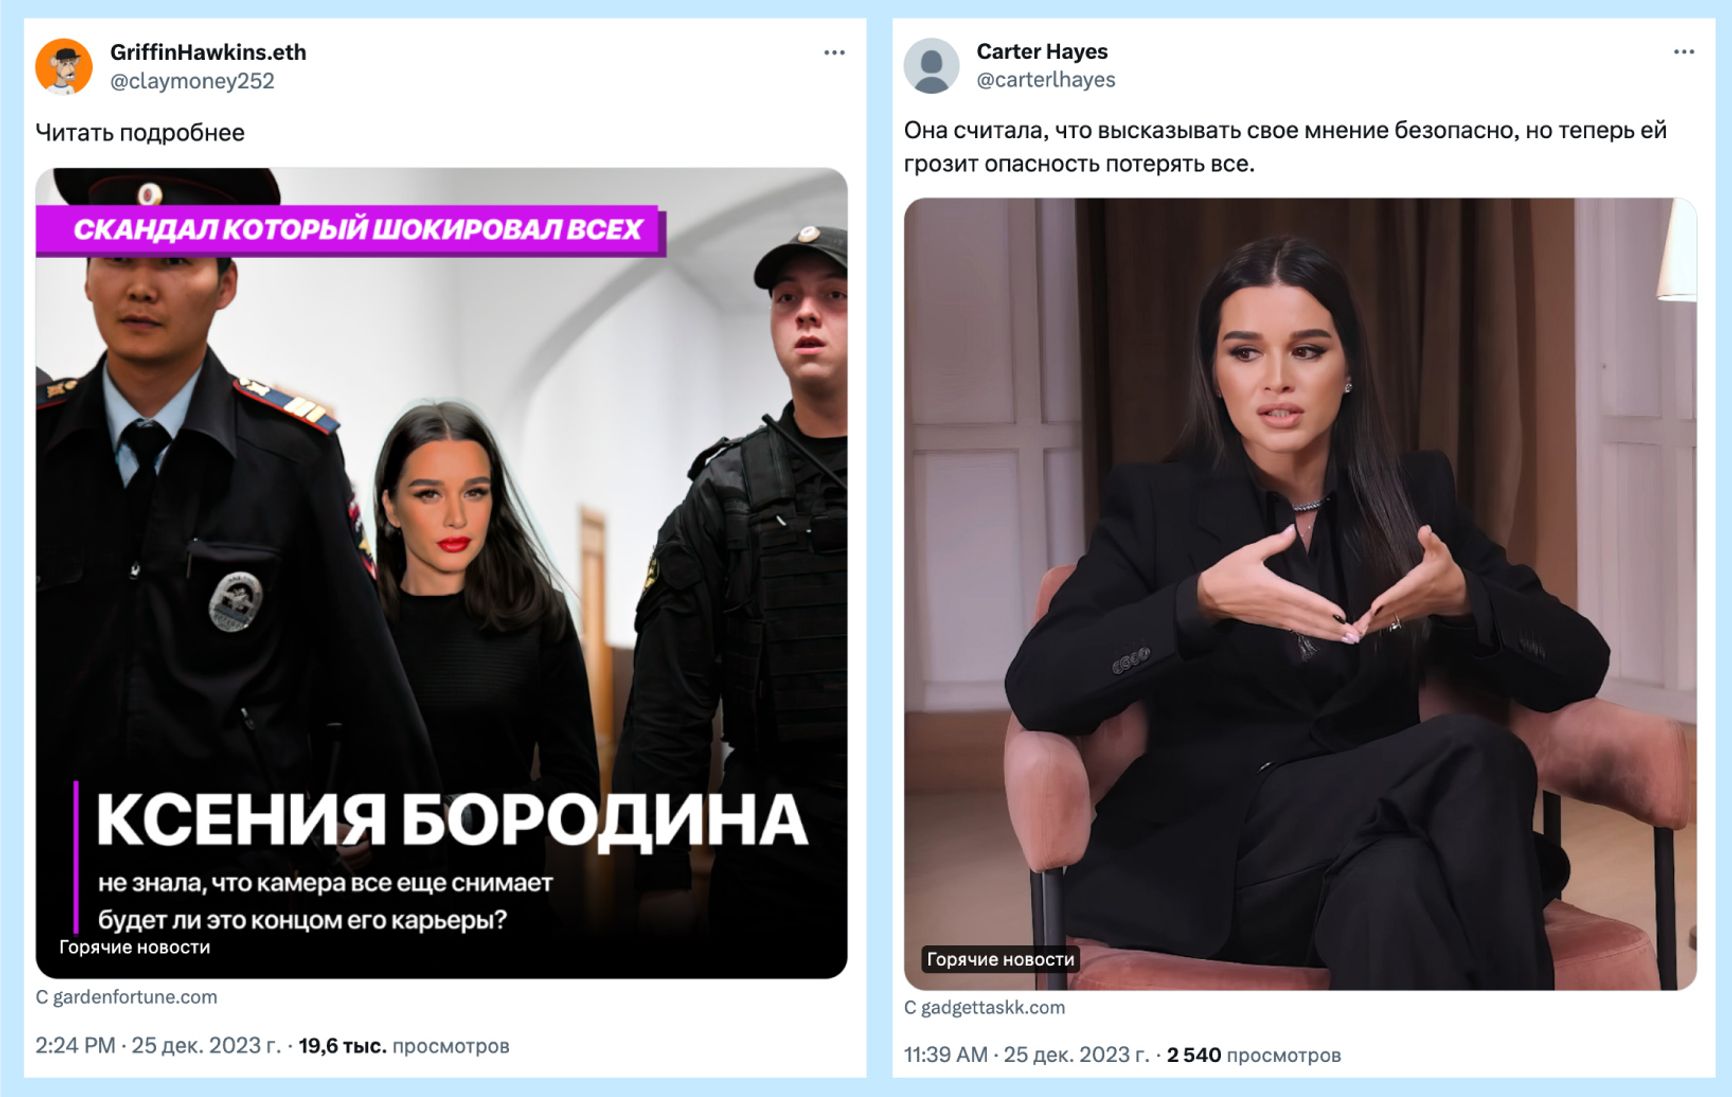 Примеры рекламных постов, которые показывал Twitter жителям России. Ссылки ведут на мошеннические сайты. Часть подобных постов была удалена после жалоб.